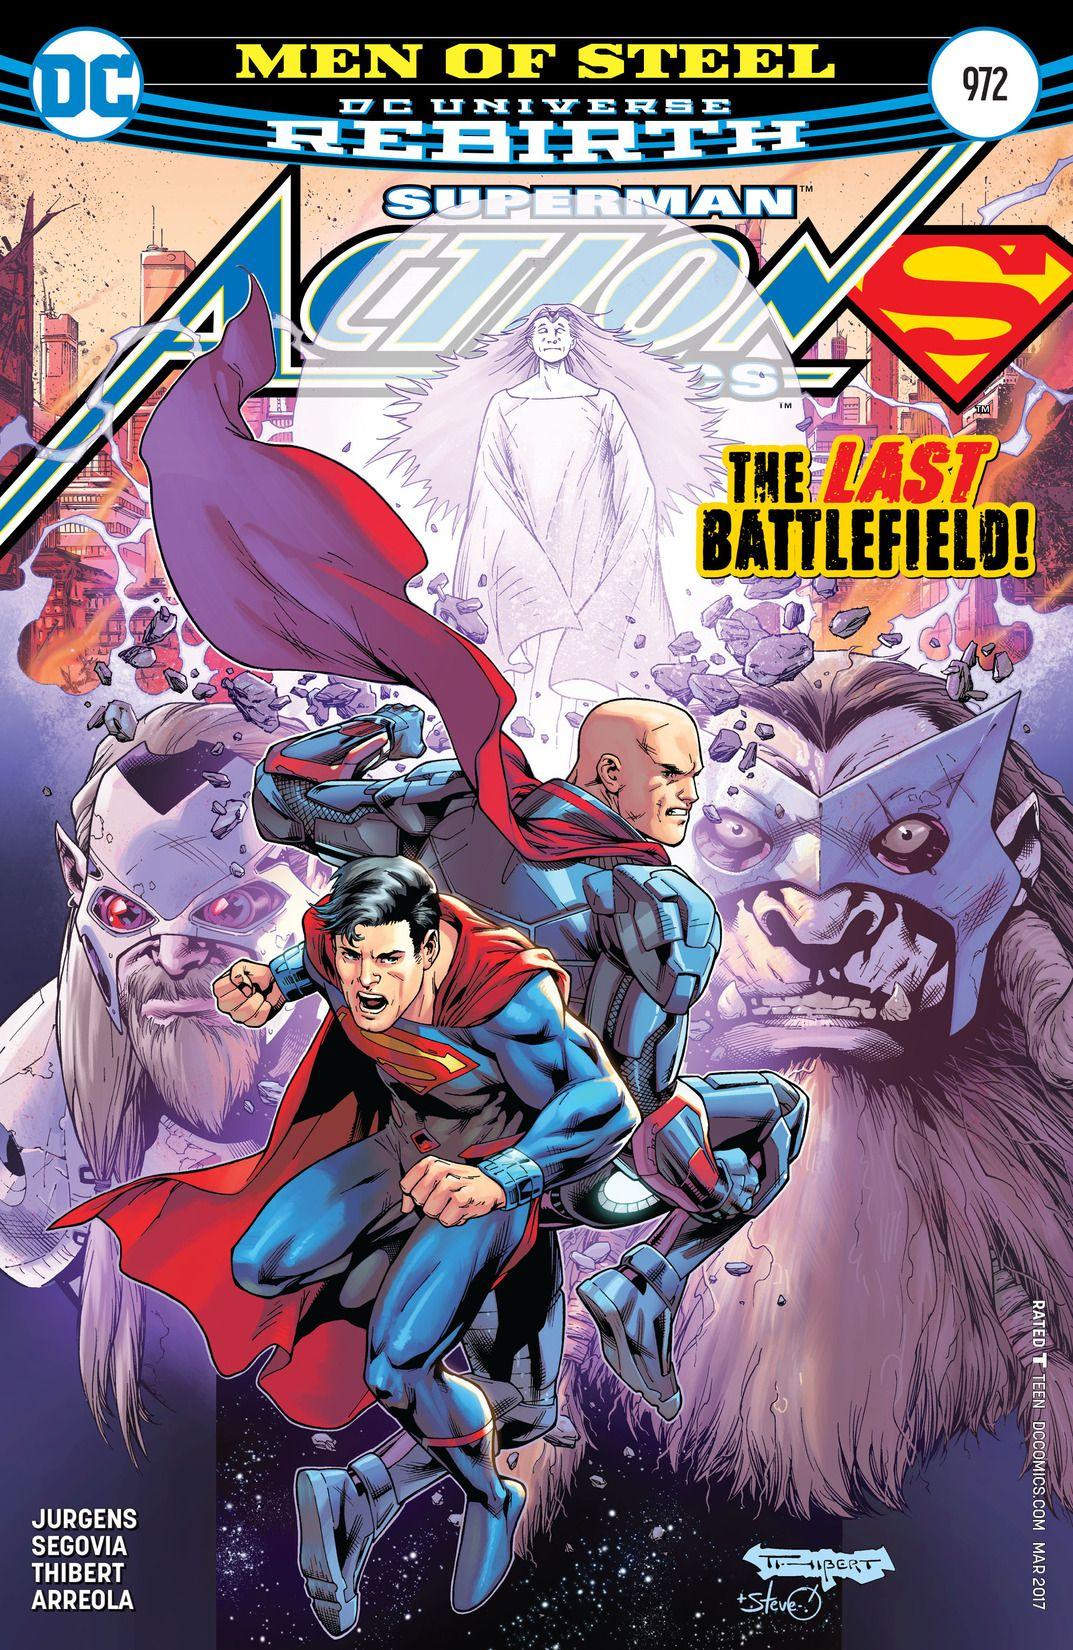 Action Comics Vol. 1 #972